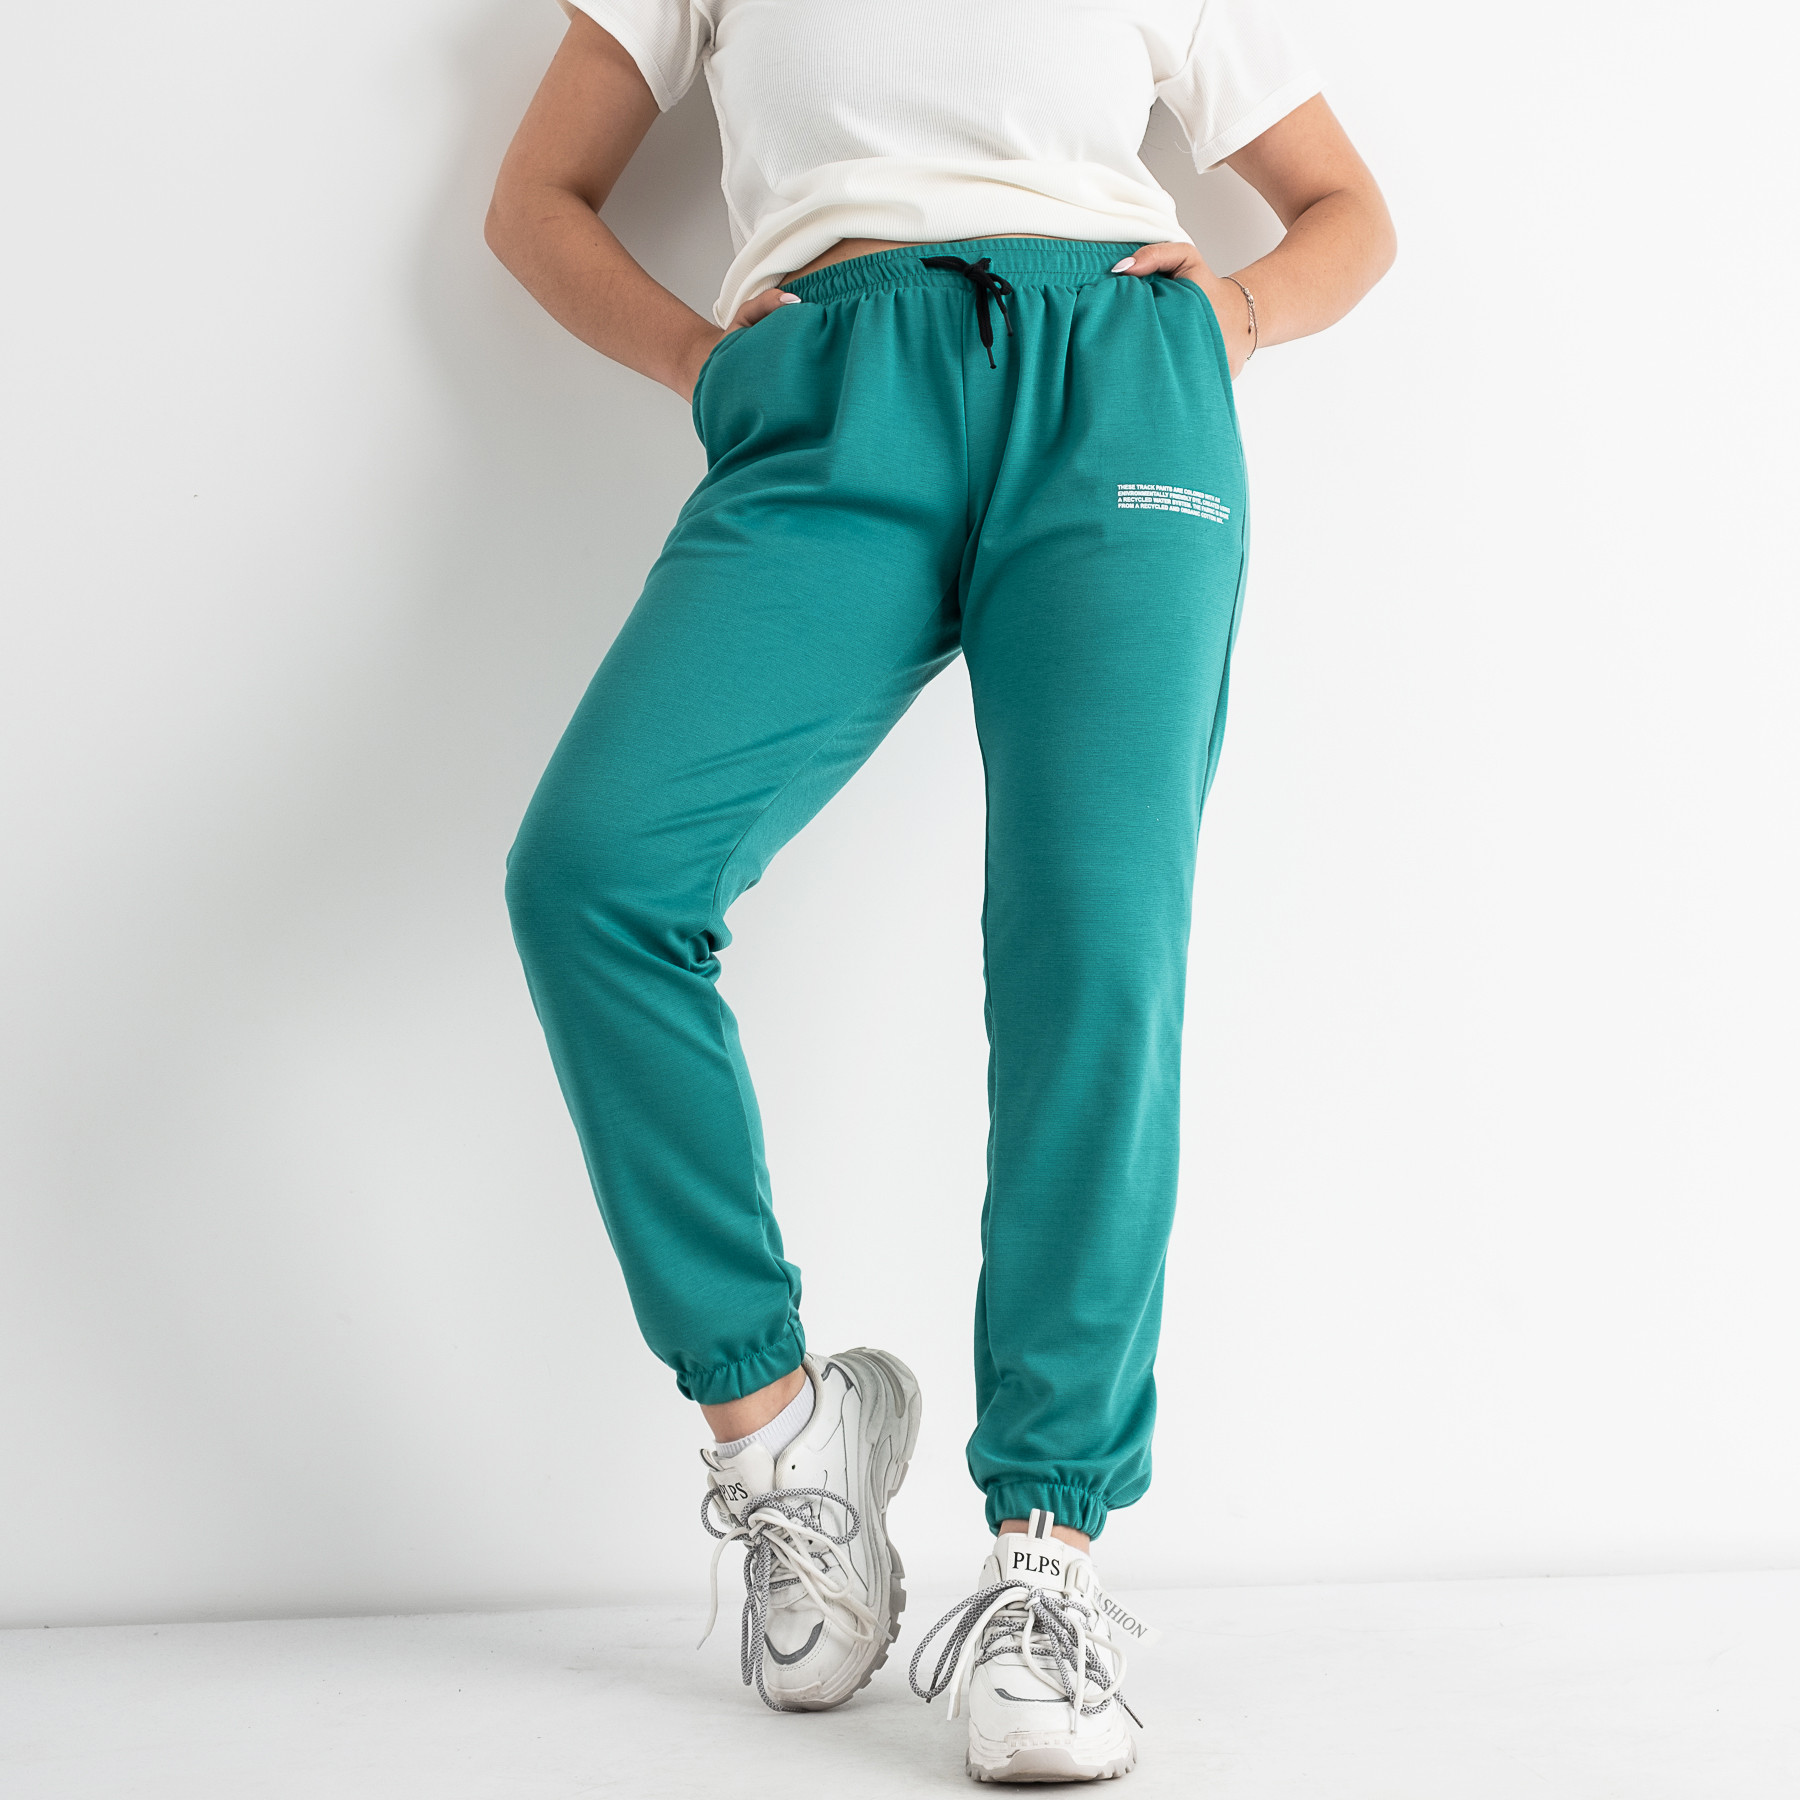 1105-88 ЗЕЛЕНЫЕ спортивные брюки женские из двунитки ( 4 ед размеры: S.M.L.XL)